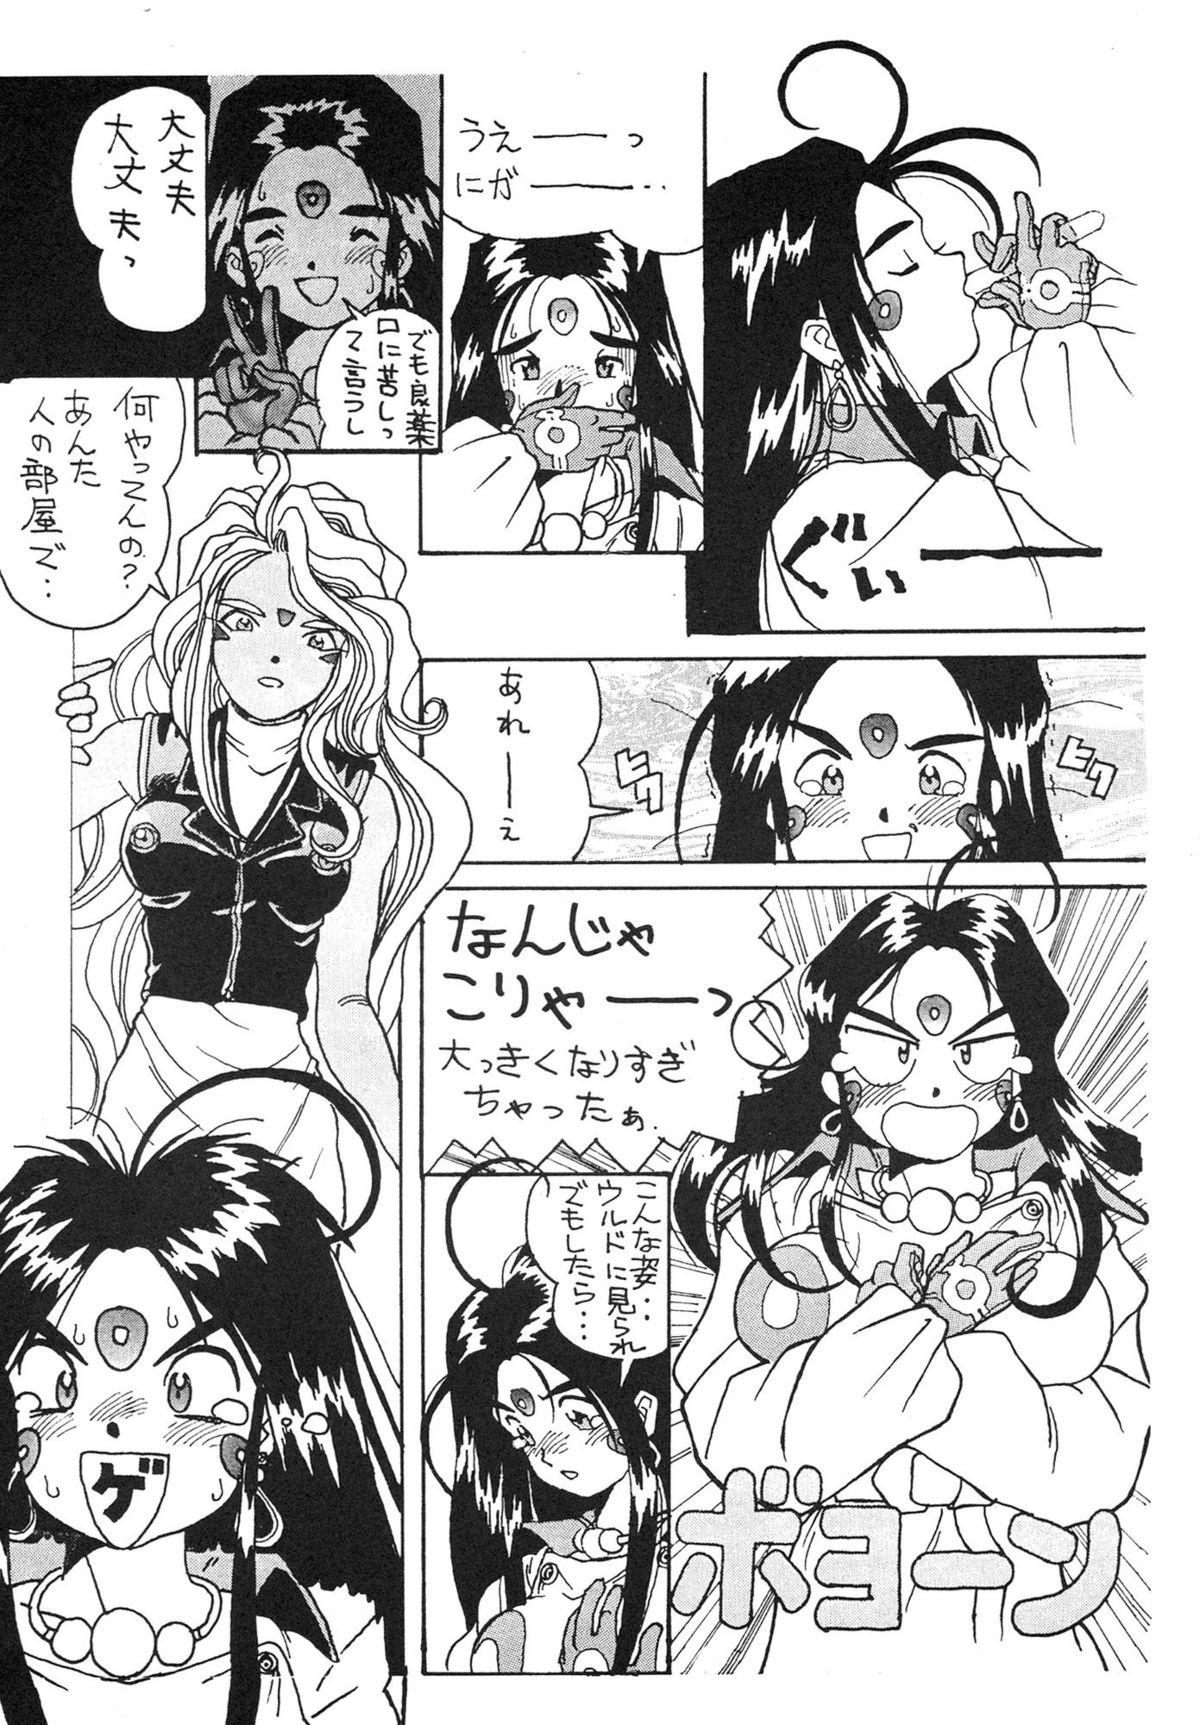 Cojiendo Ah Ah Megamisamasama - Ah my goddess Beautiful - Page 11